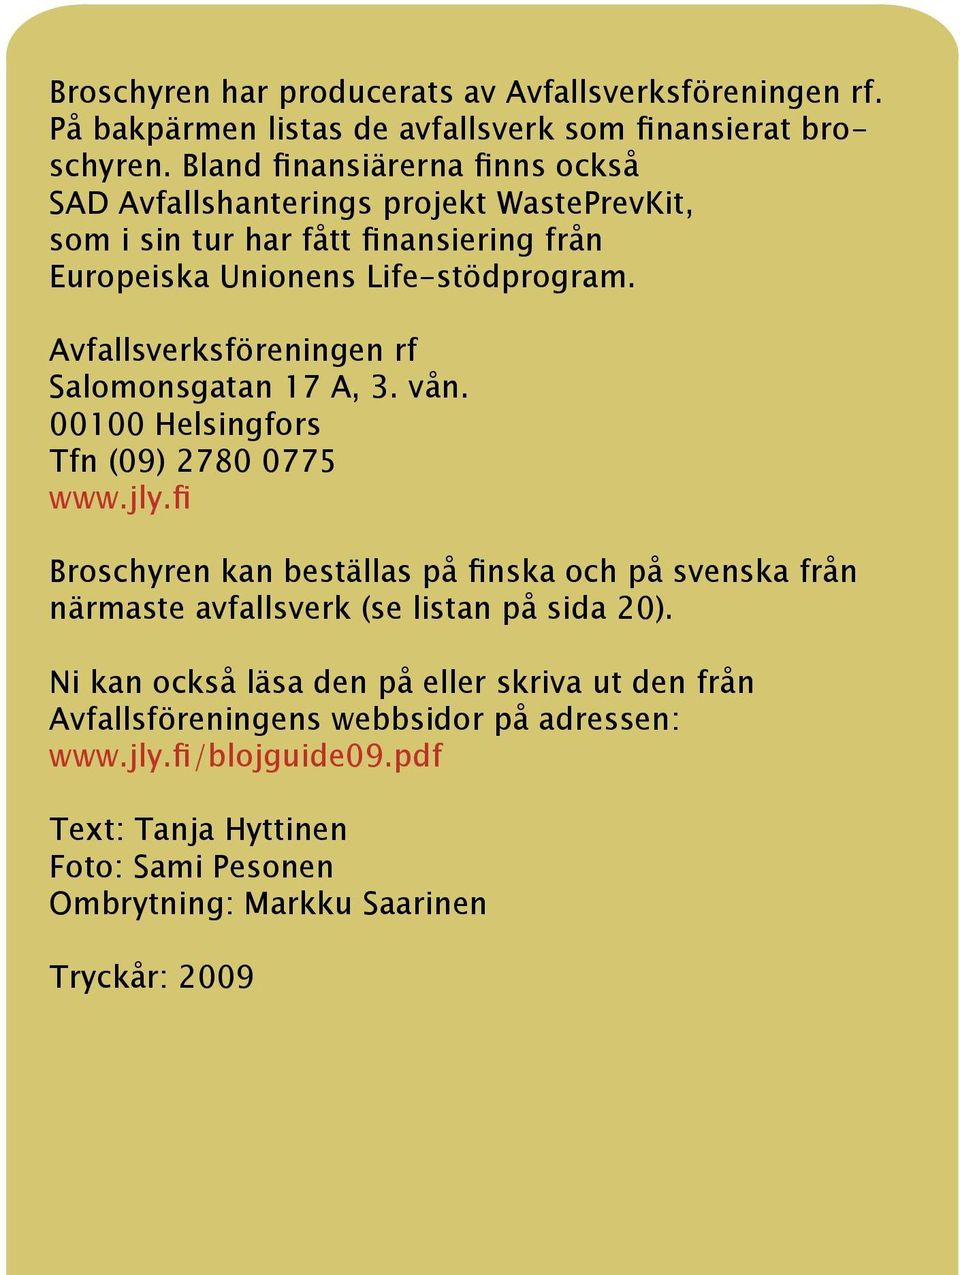 Avfallsverksföreningen rf Salomonsgatan 17 A, 3. vån. 00100 Helsingfors Tfn (09) 2780 0775 www.jly.